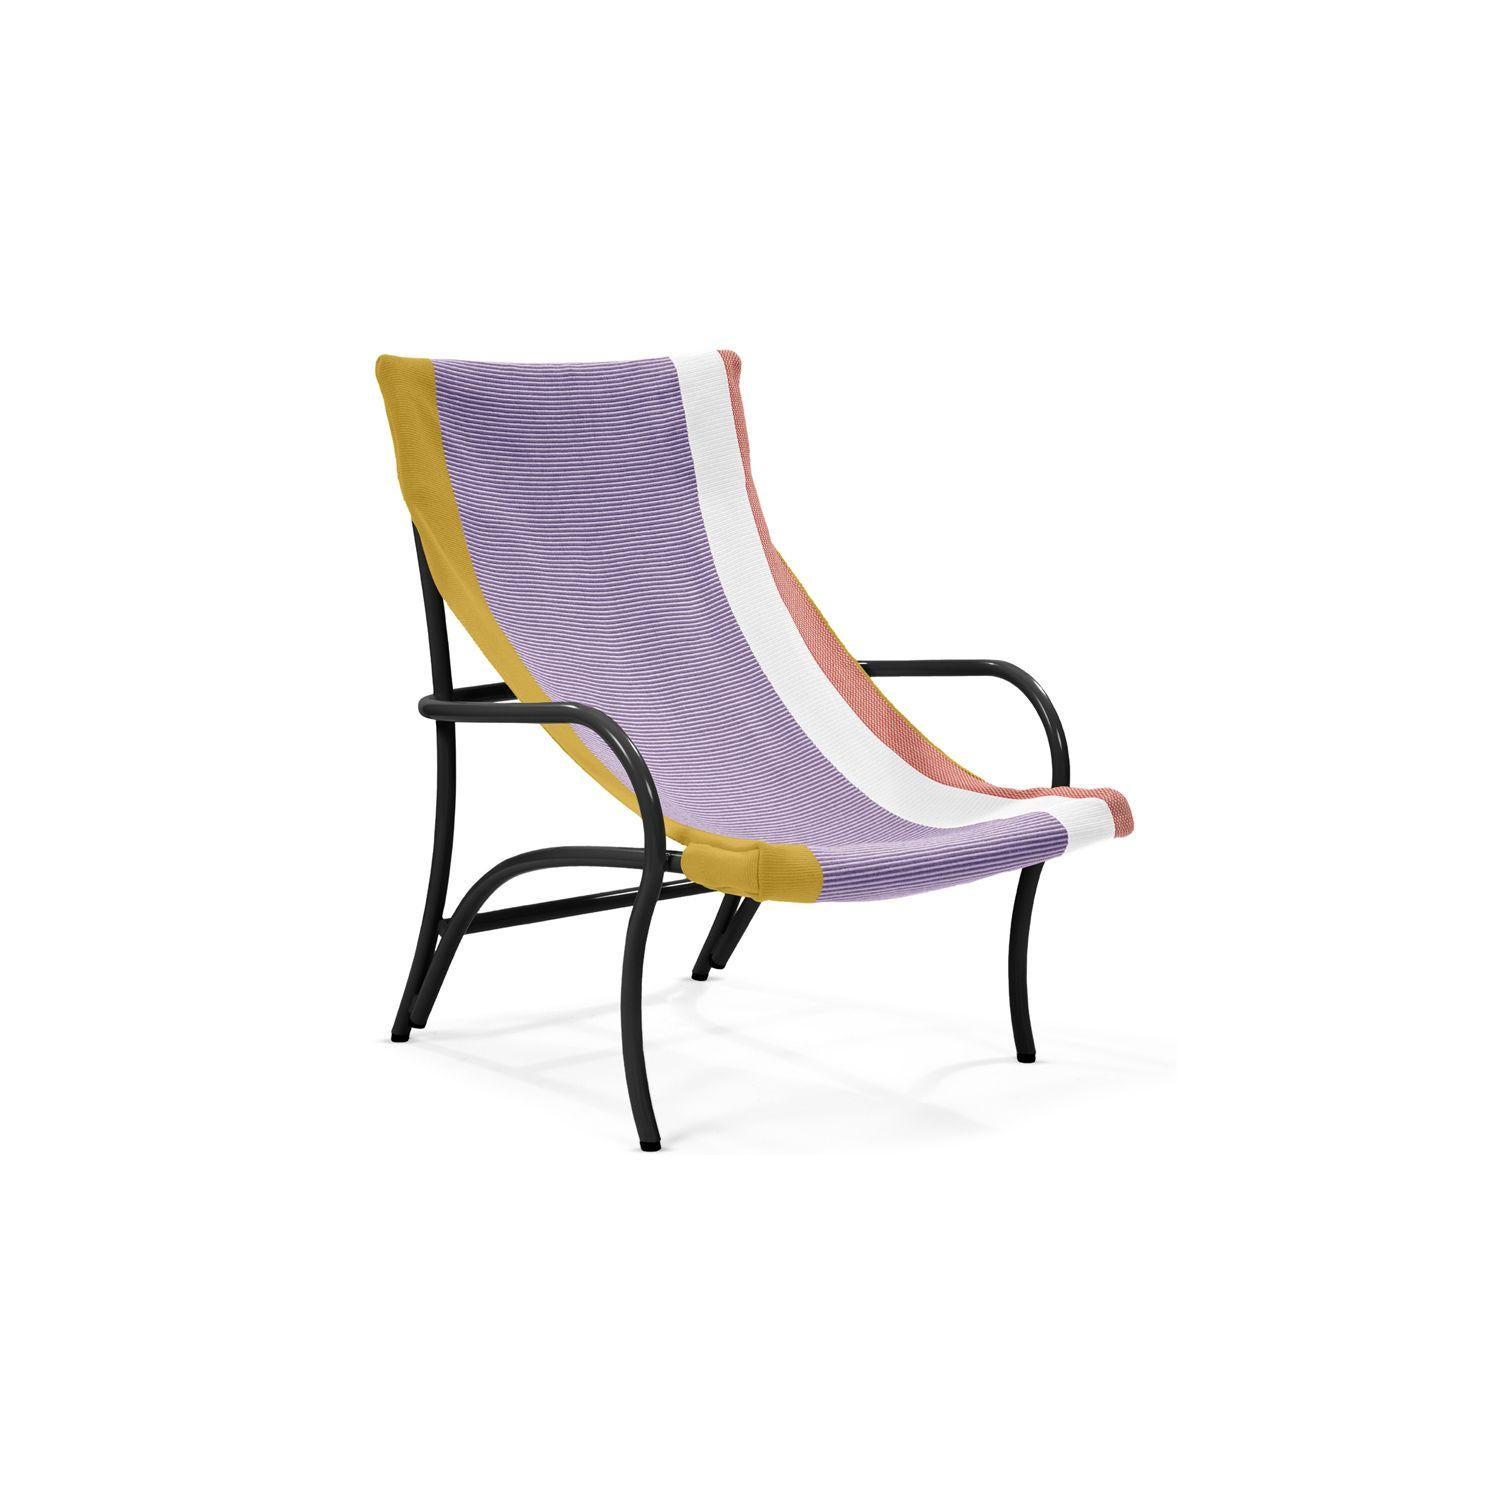 Abmessungen: bxhxd 727x885x867 mm
Mit dem Maraca Lounge Chair hat Sebastian Herkner einen charmanten Ort zum Entspannen geschaffen, inspiriert von den traditionellen kolumbianischen Hängematten. Die sanften Kurven des Stahlgestells spiegeln die